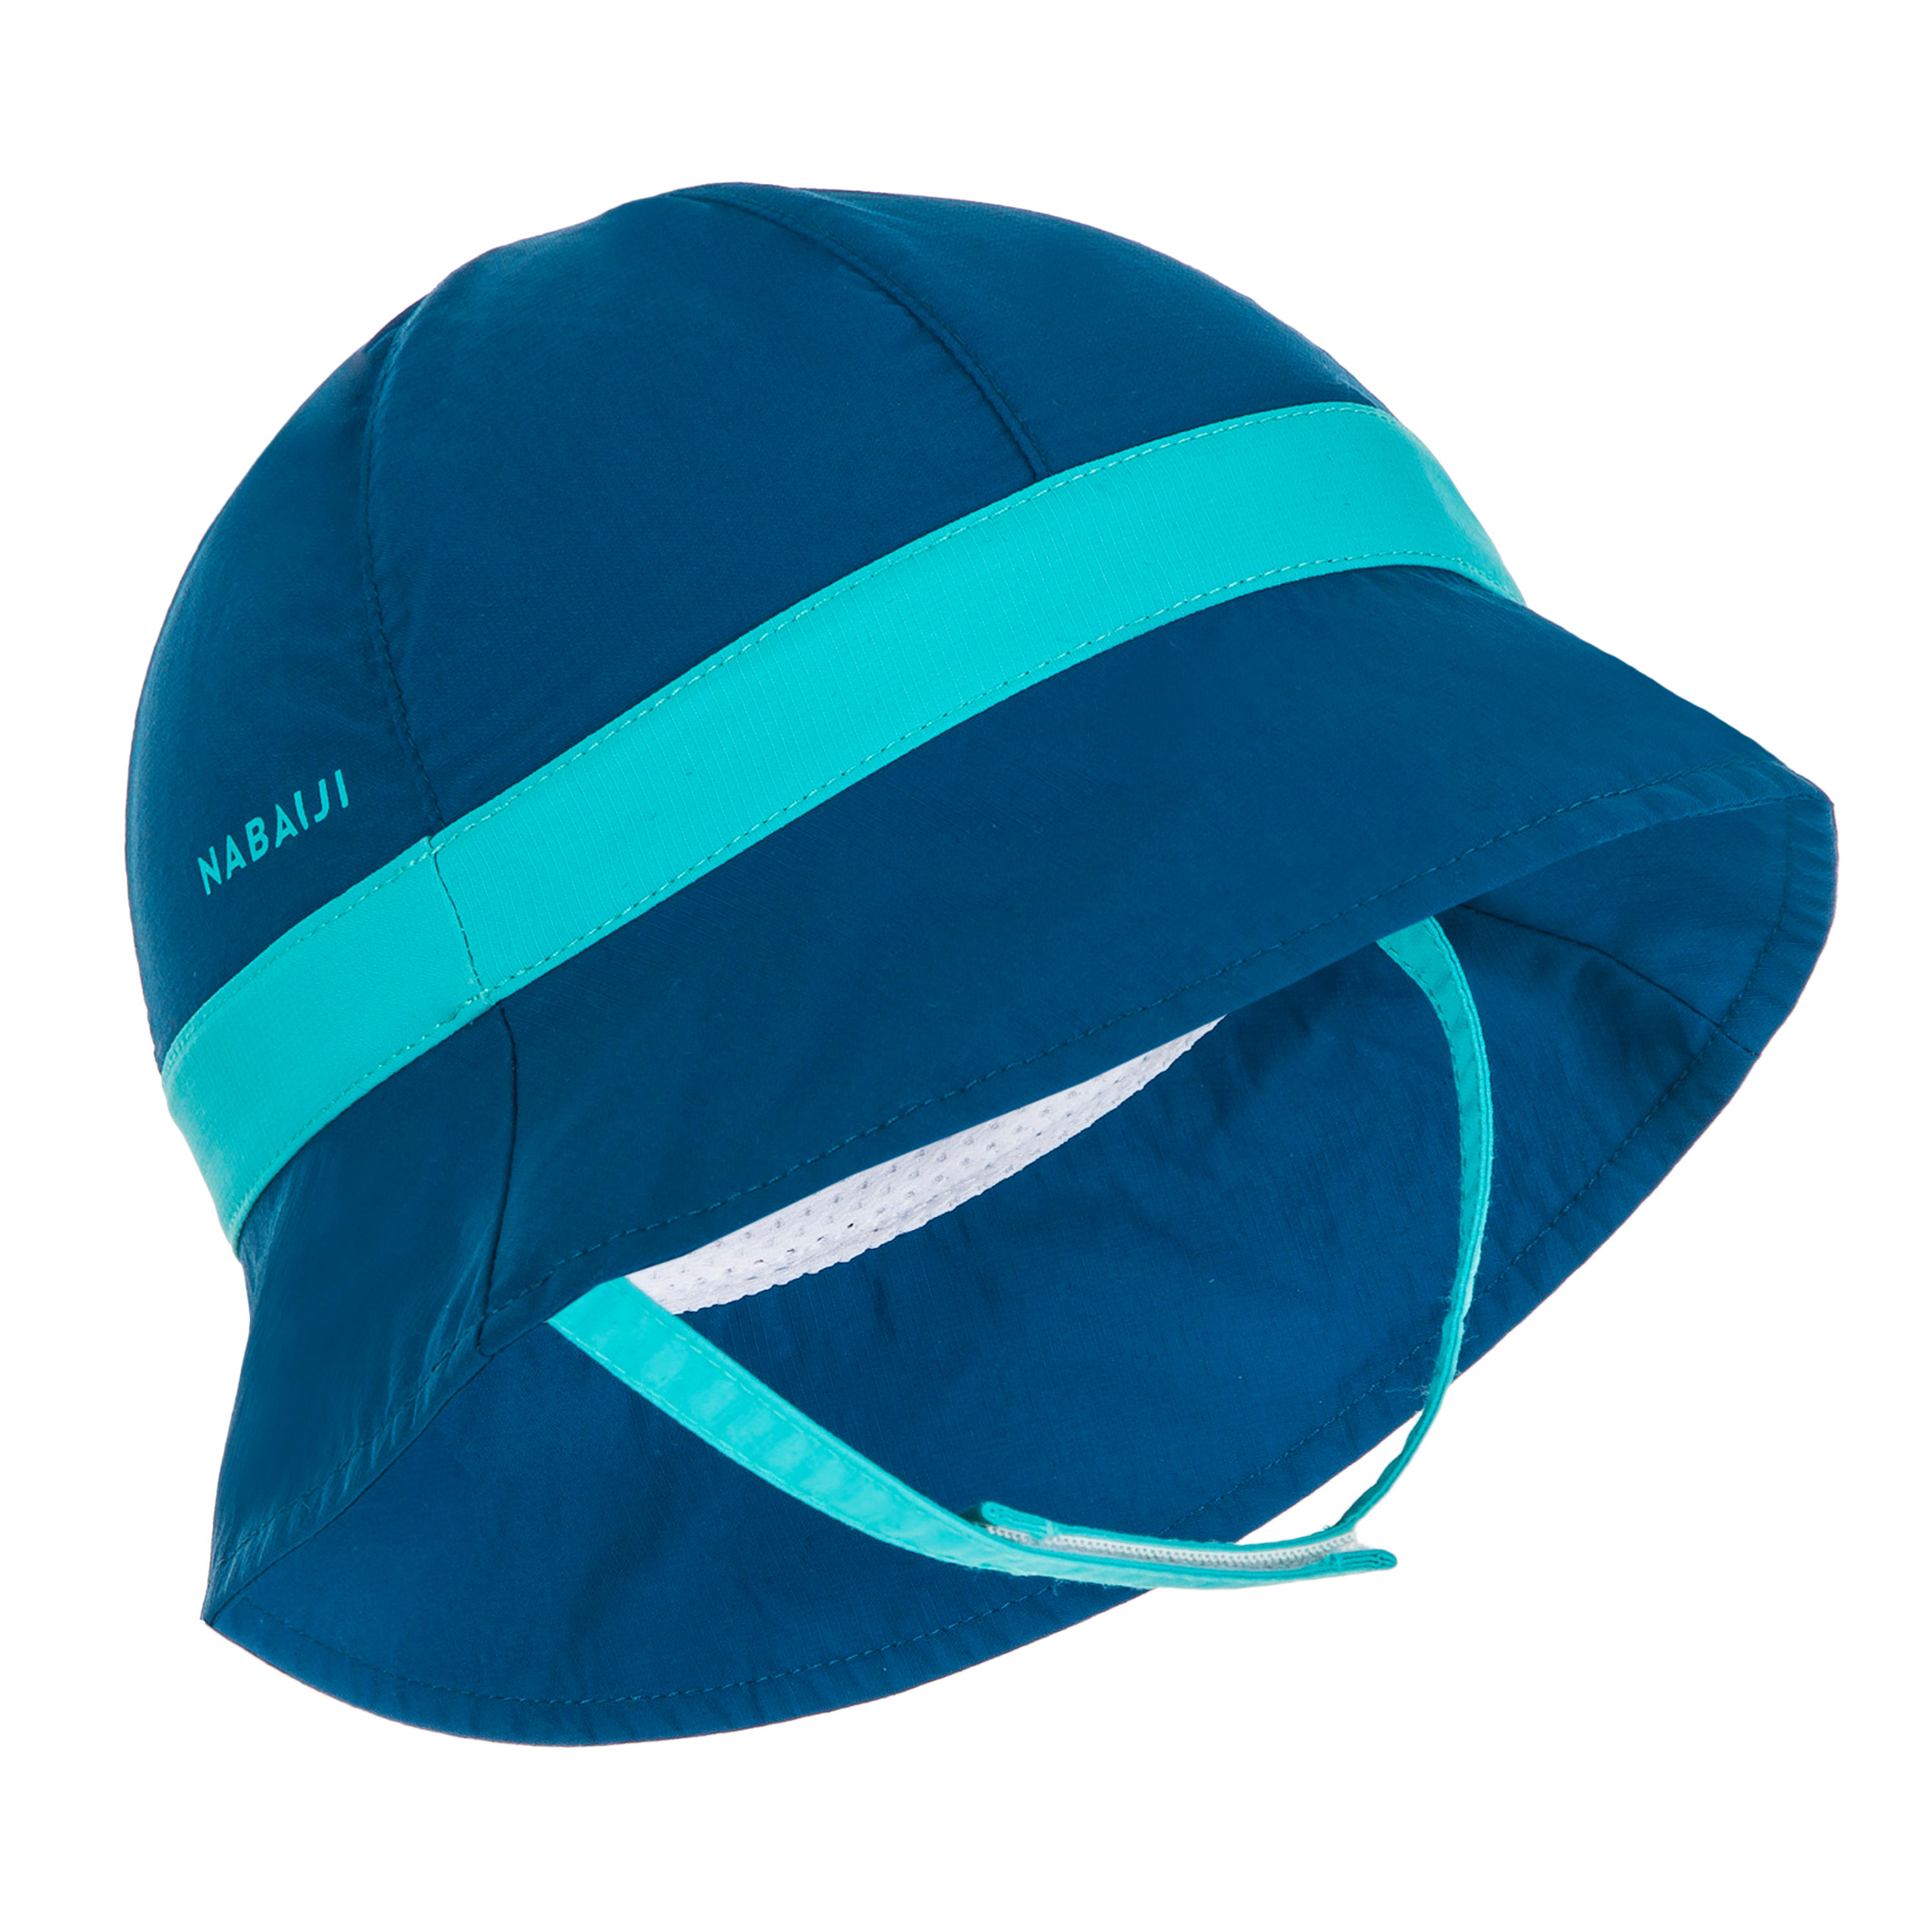 decathlon swimming hat